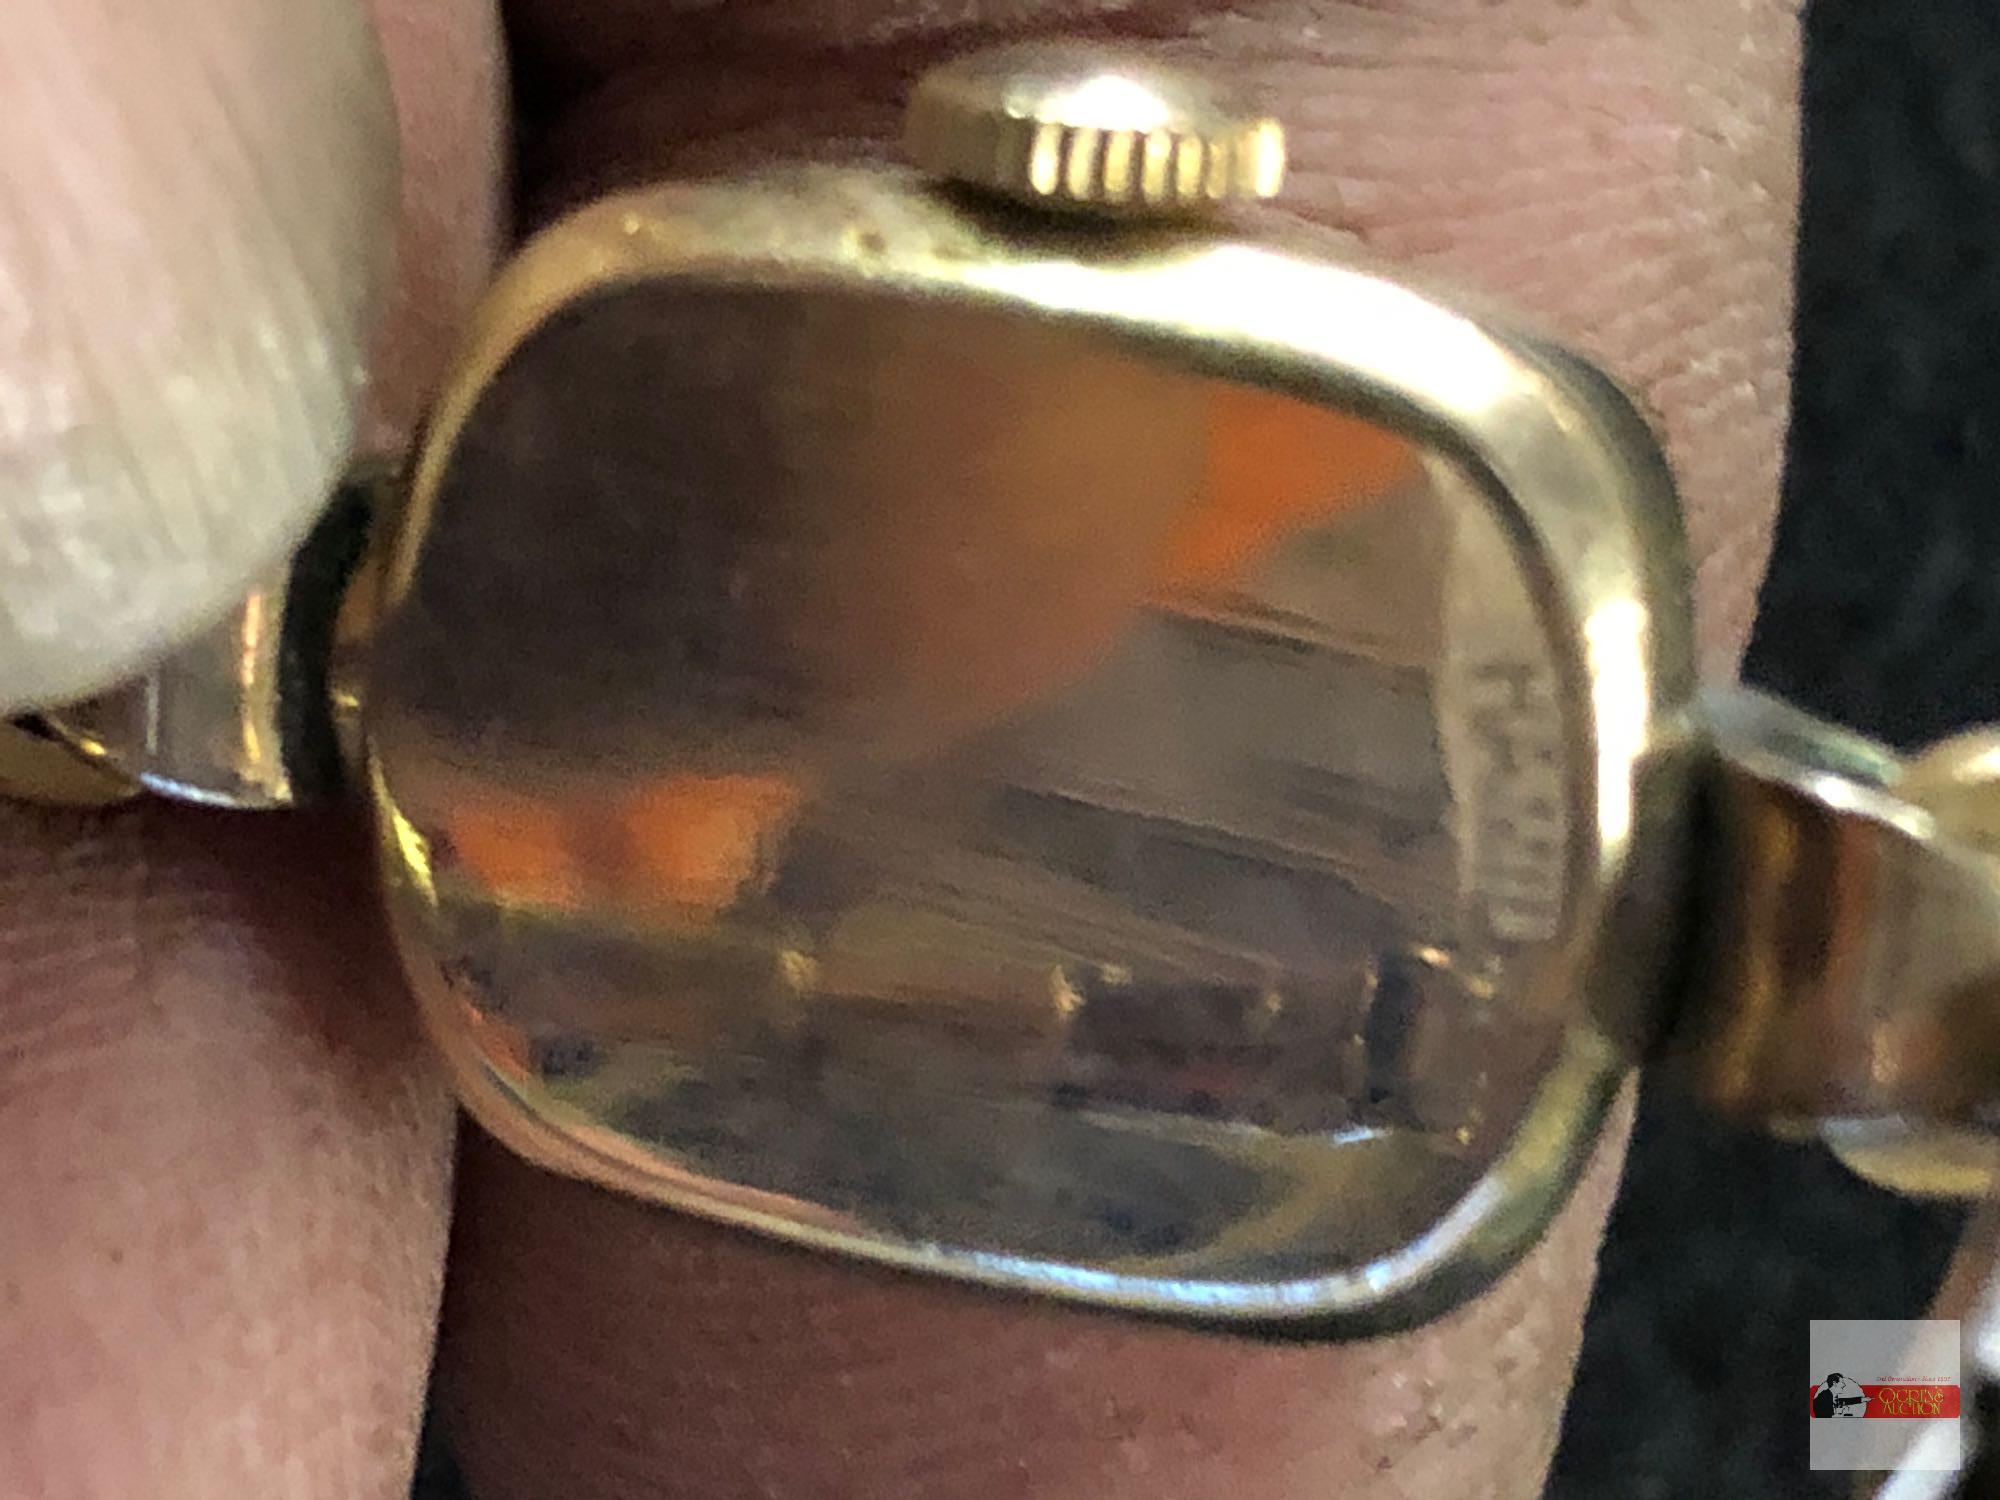 Jewelry - vintage Hamilton women's wrist watch